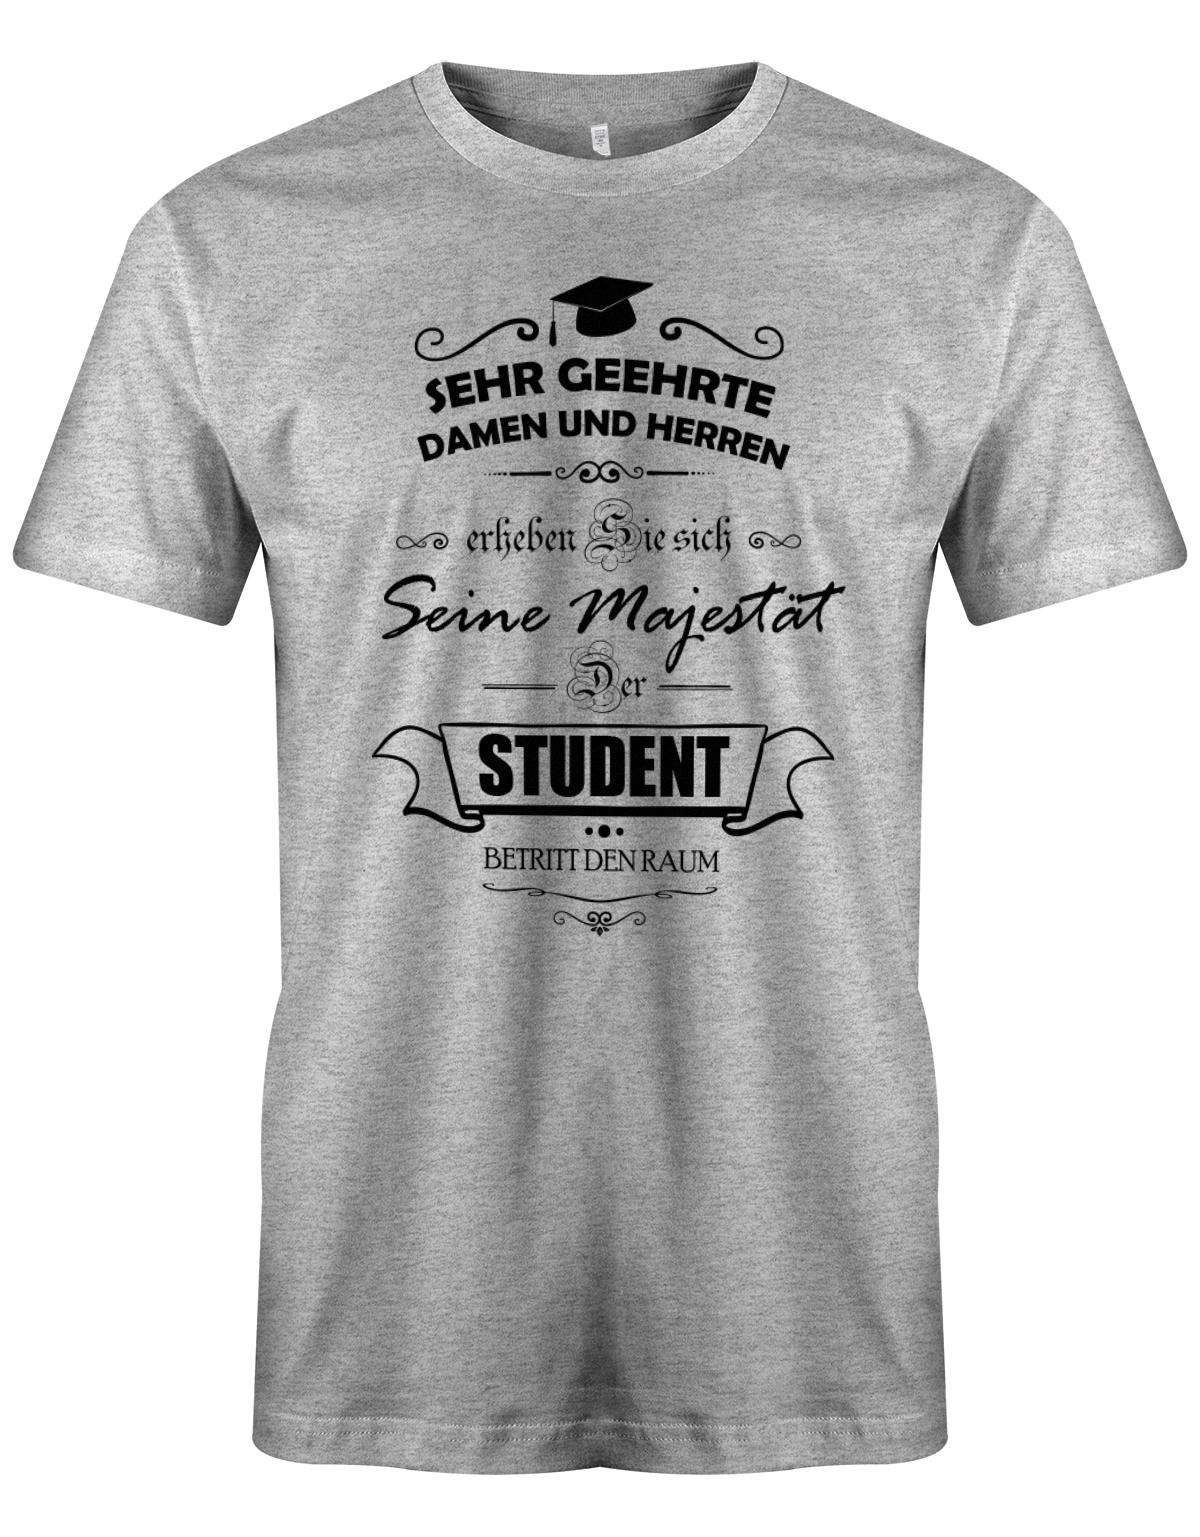 Seine-Majest-t-der-Student-betritt-den-Raum-Herren-Studium-Student-Shirt-Grau